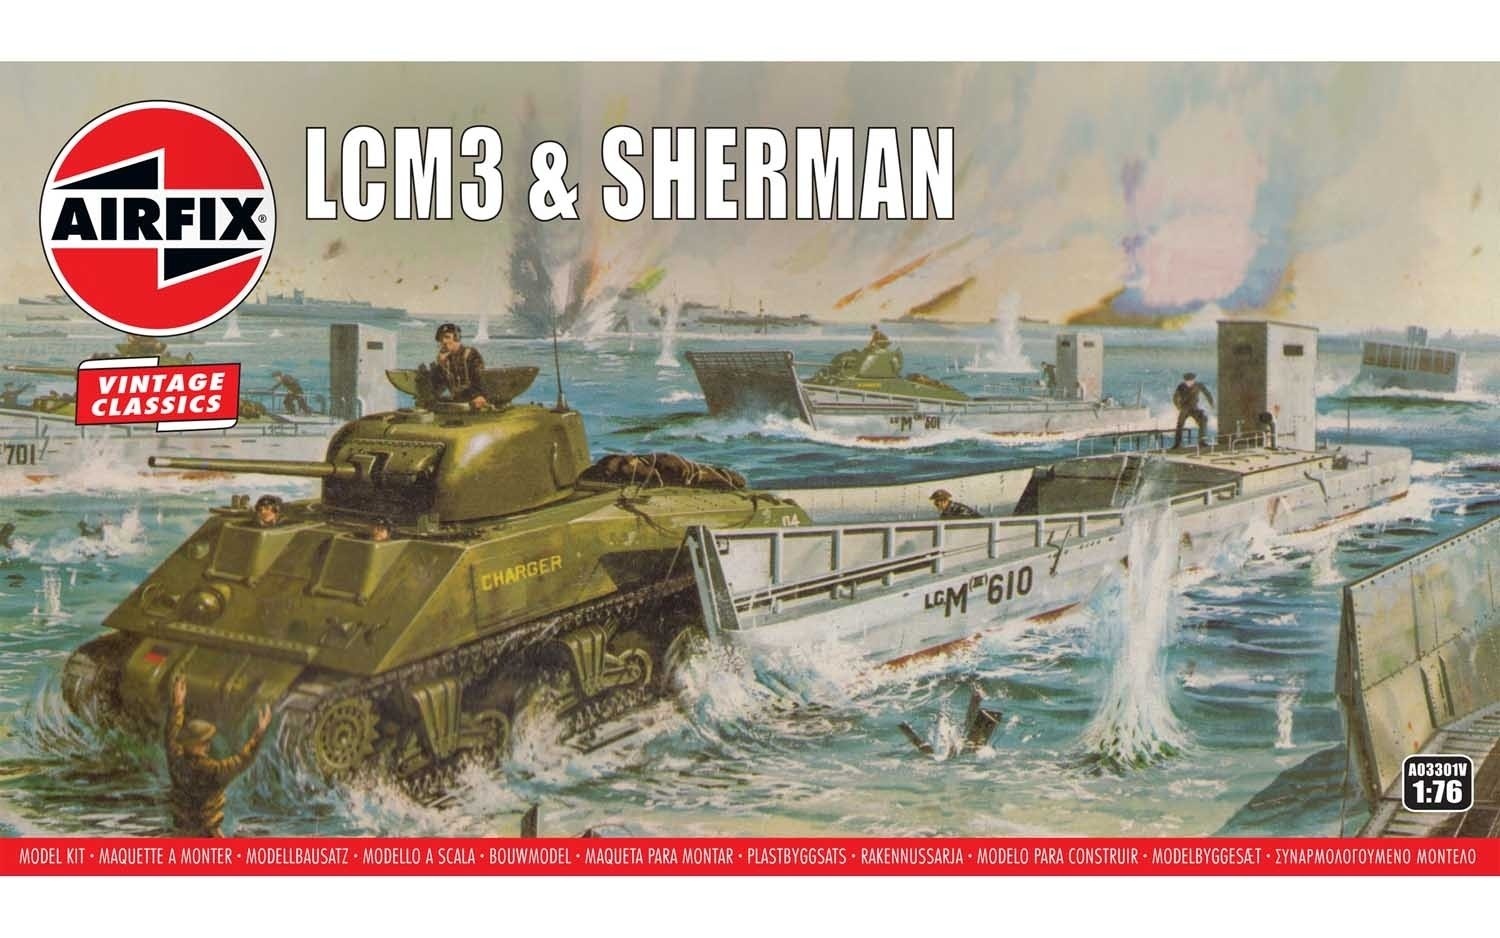 фото A03301v сборные модели десантного катера и танка lcm3 sherman airfix